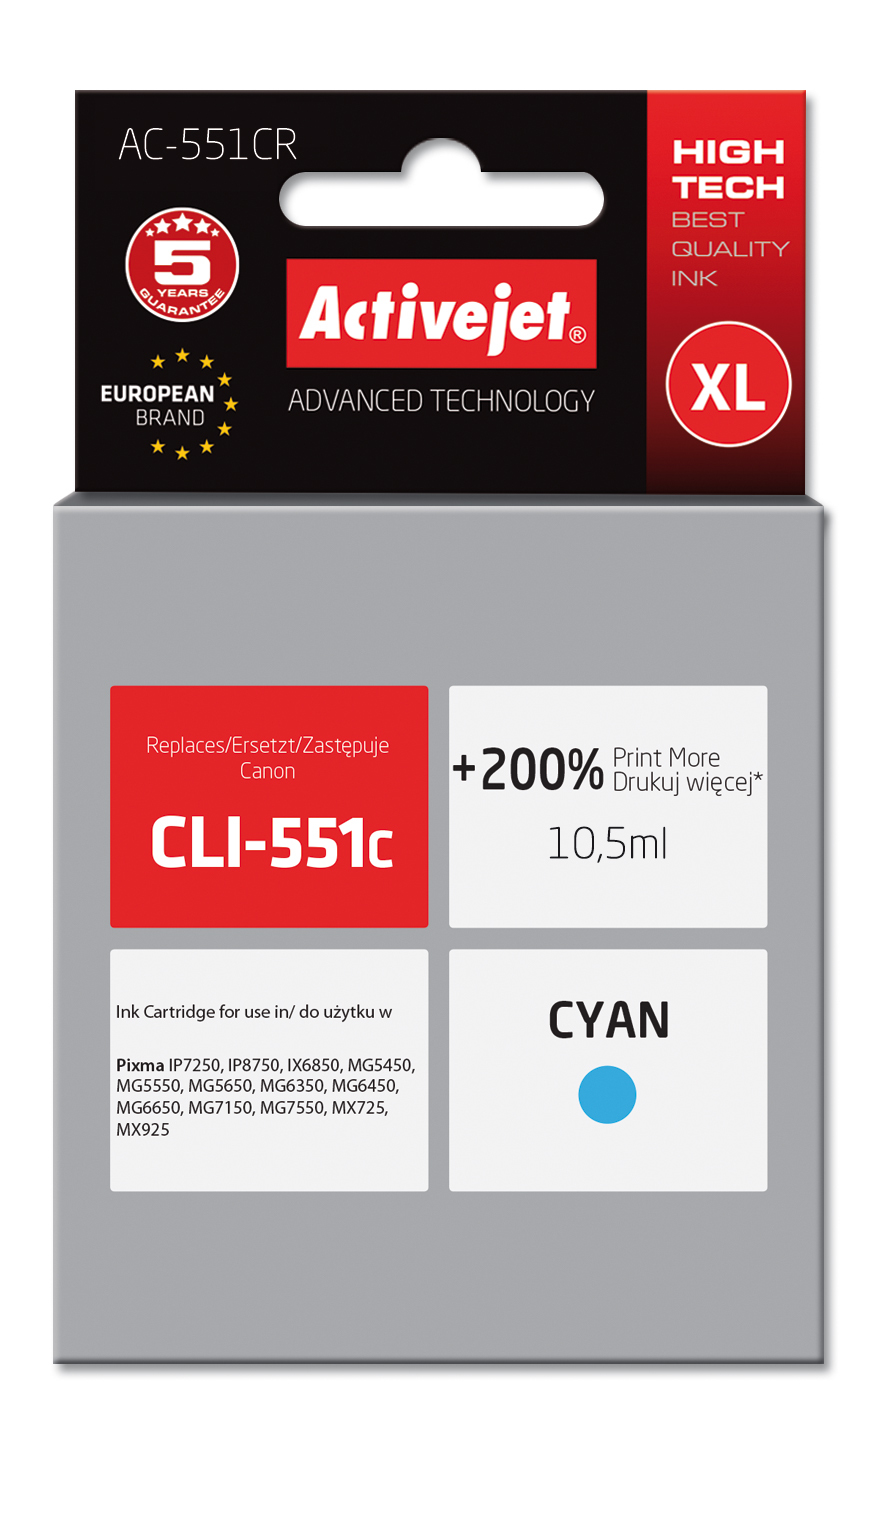 Tusz Activejet AC-551CR do drukarki Canon, Zamiennik Canon CLI-551C;  Premium;  10,5ml;  błękitny. Drukuje więcej o 200%.